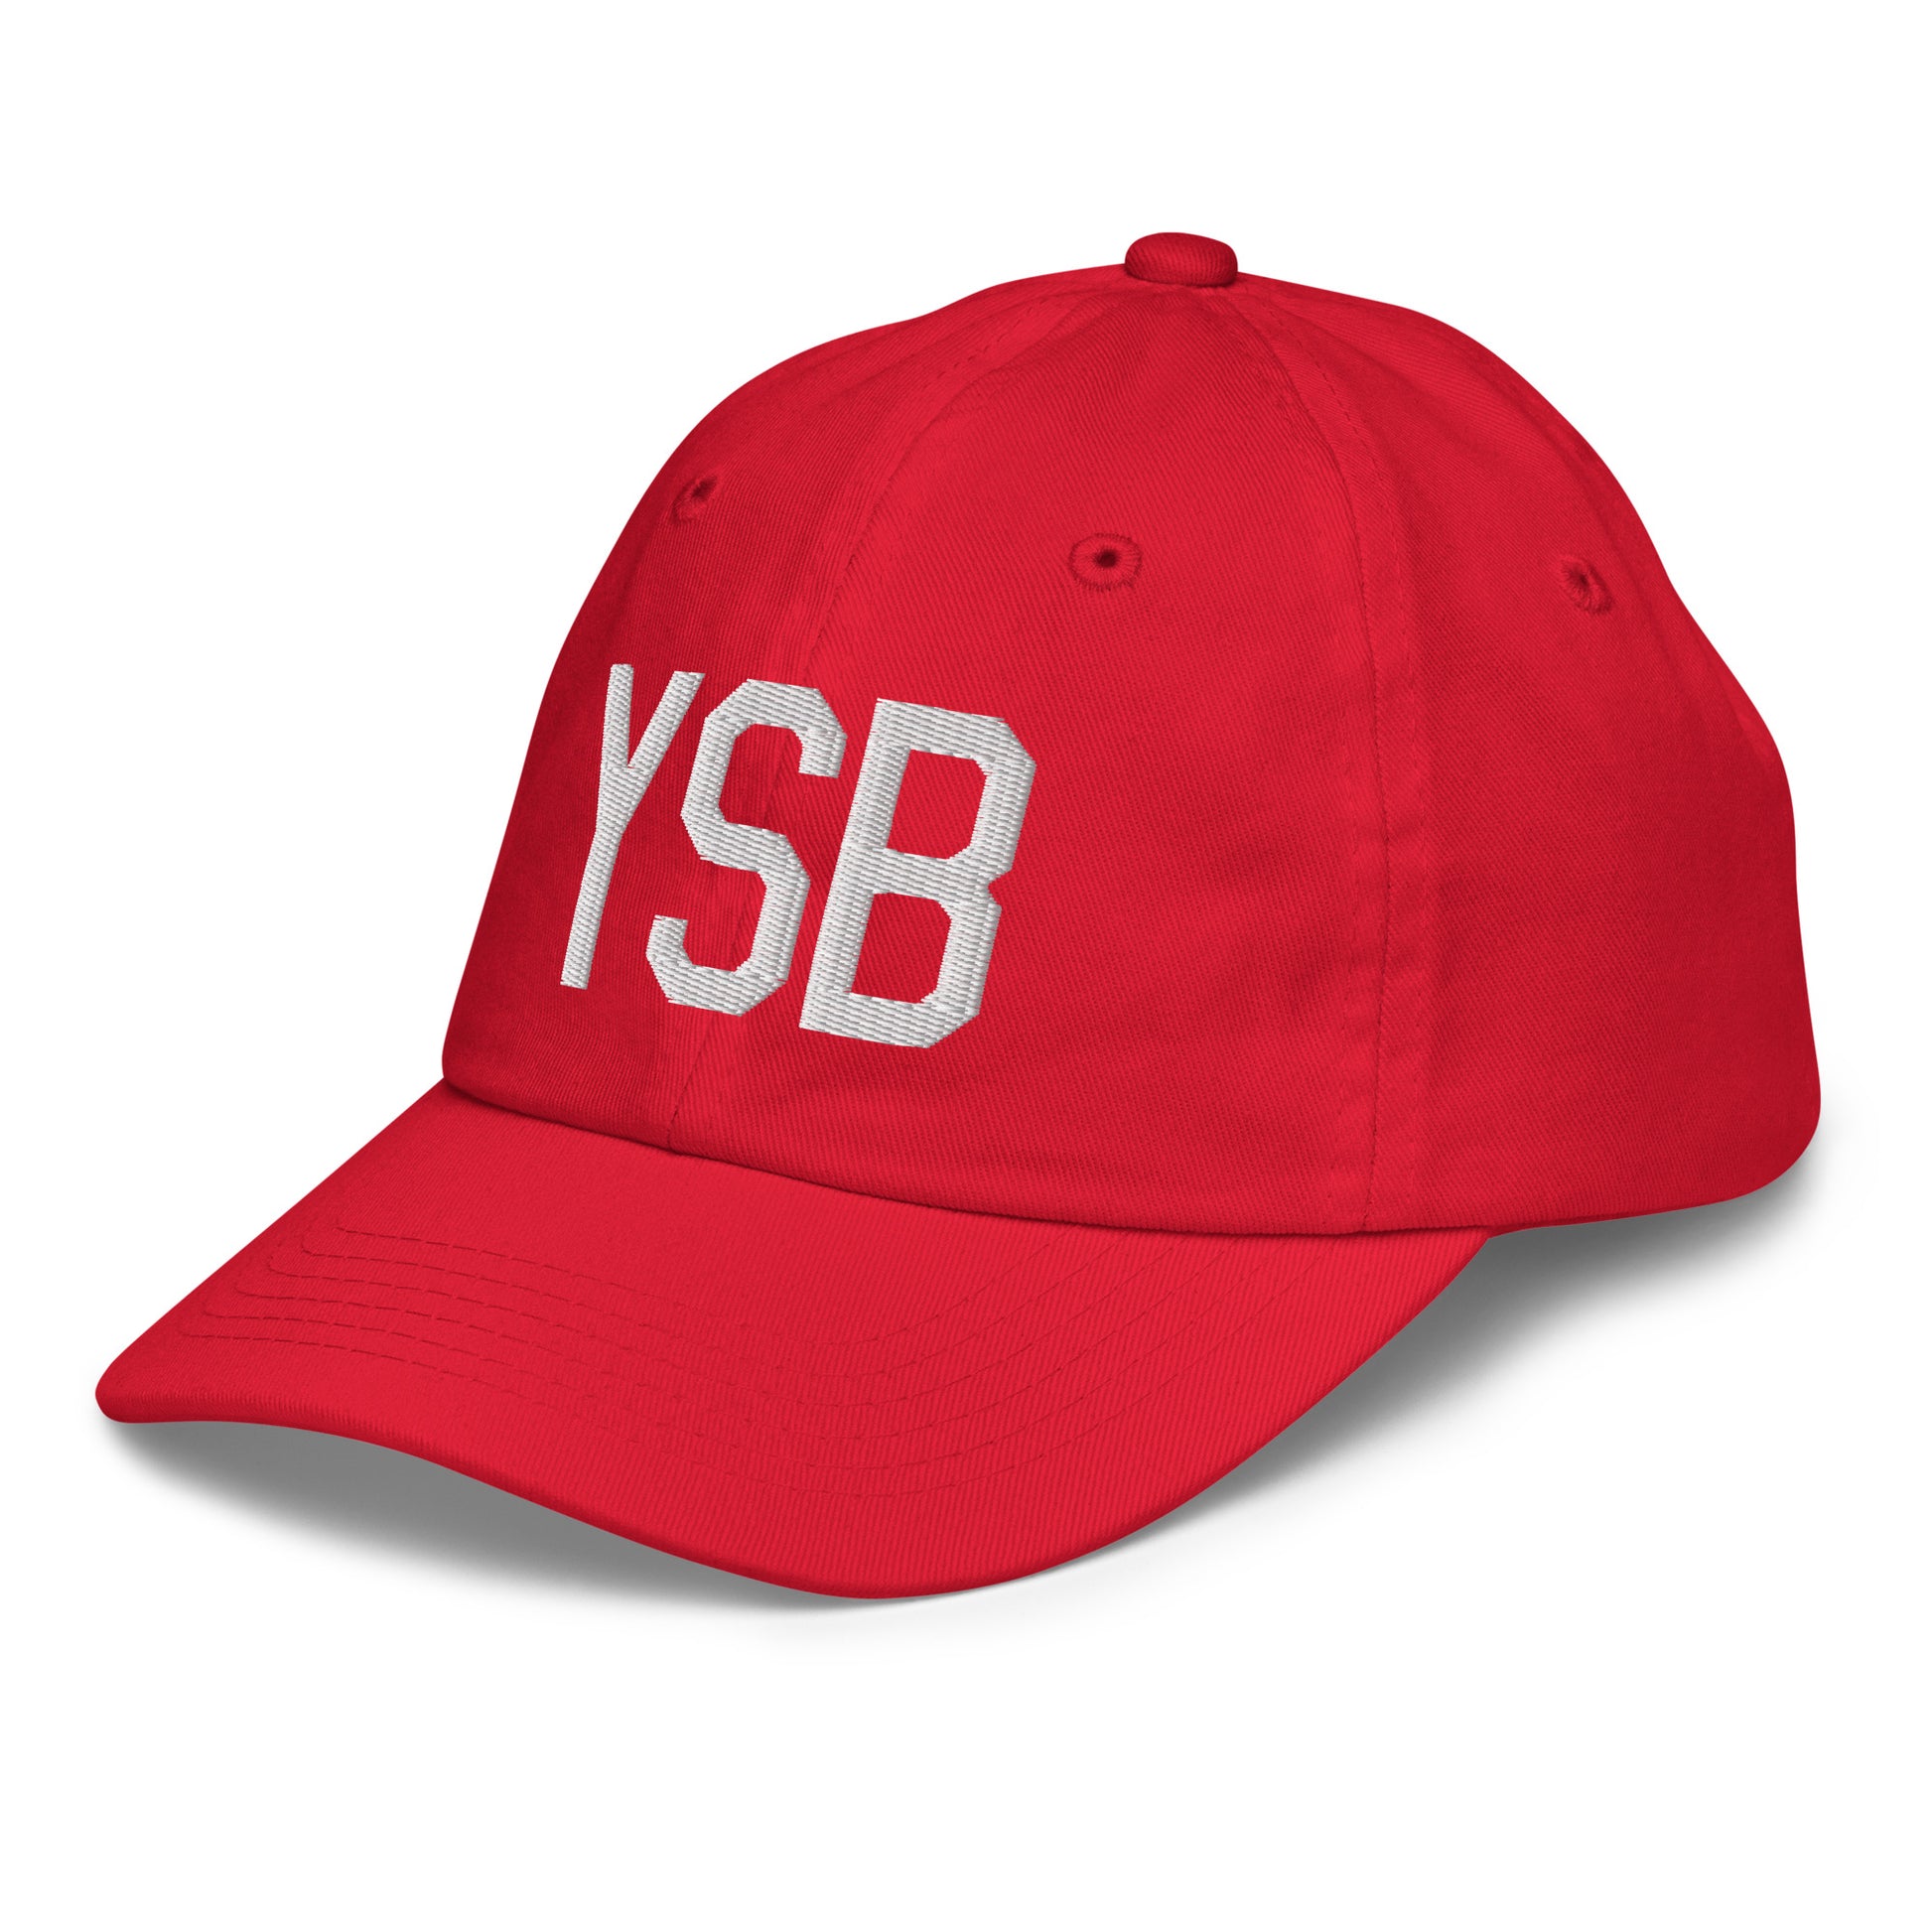 Airport Code Kid's Baseball Cap - White • YSB Sudbury • YHM Designs - Image 19